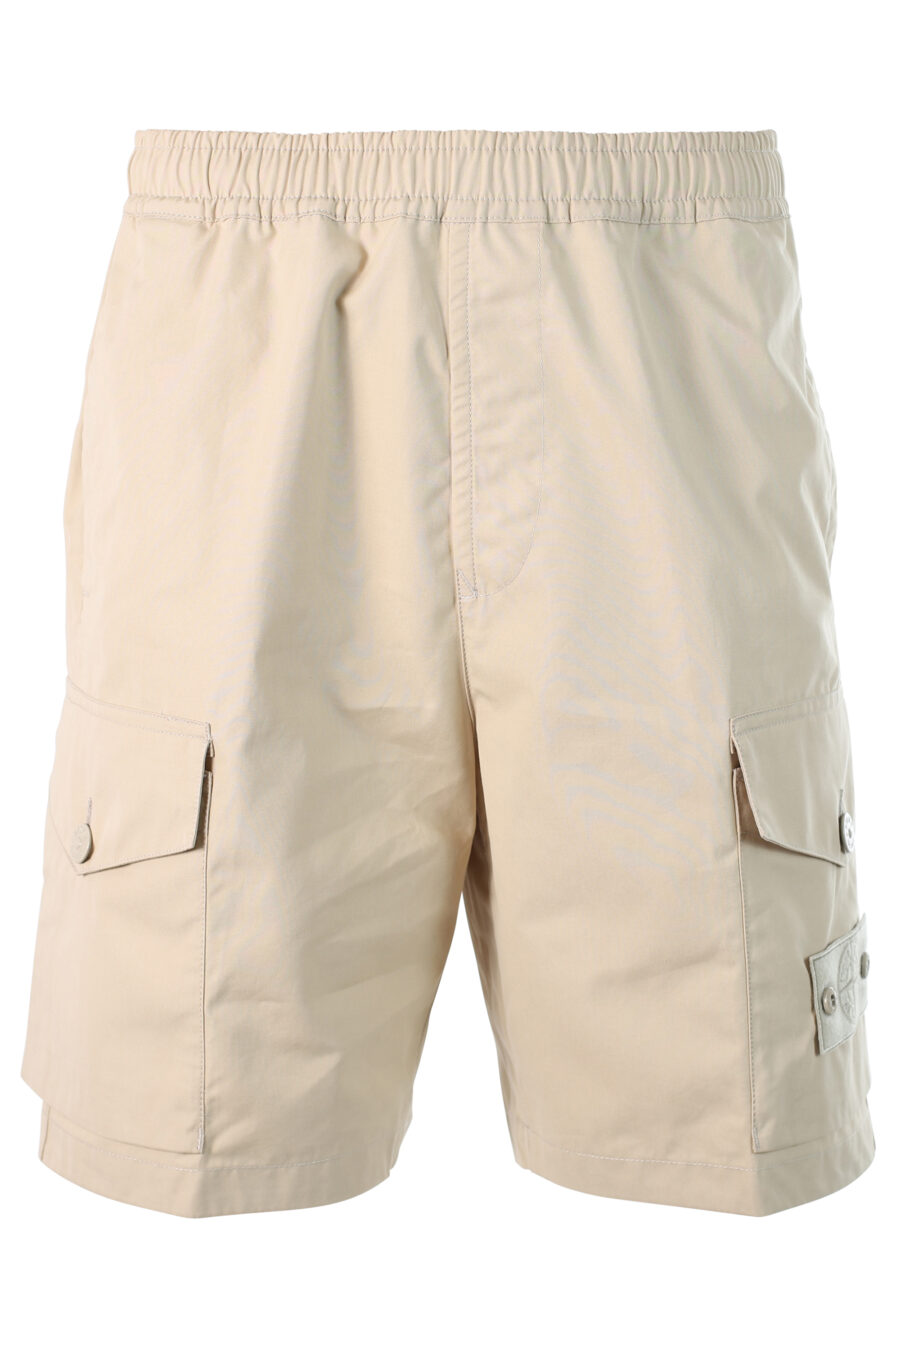 Pantalón beige corto estilo cargo con parche - 8052572538285